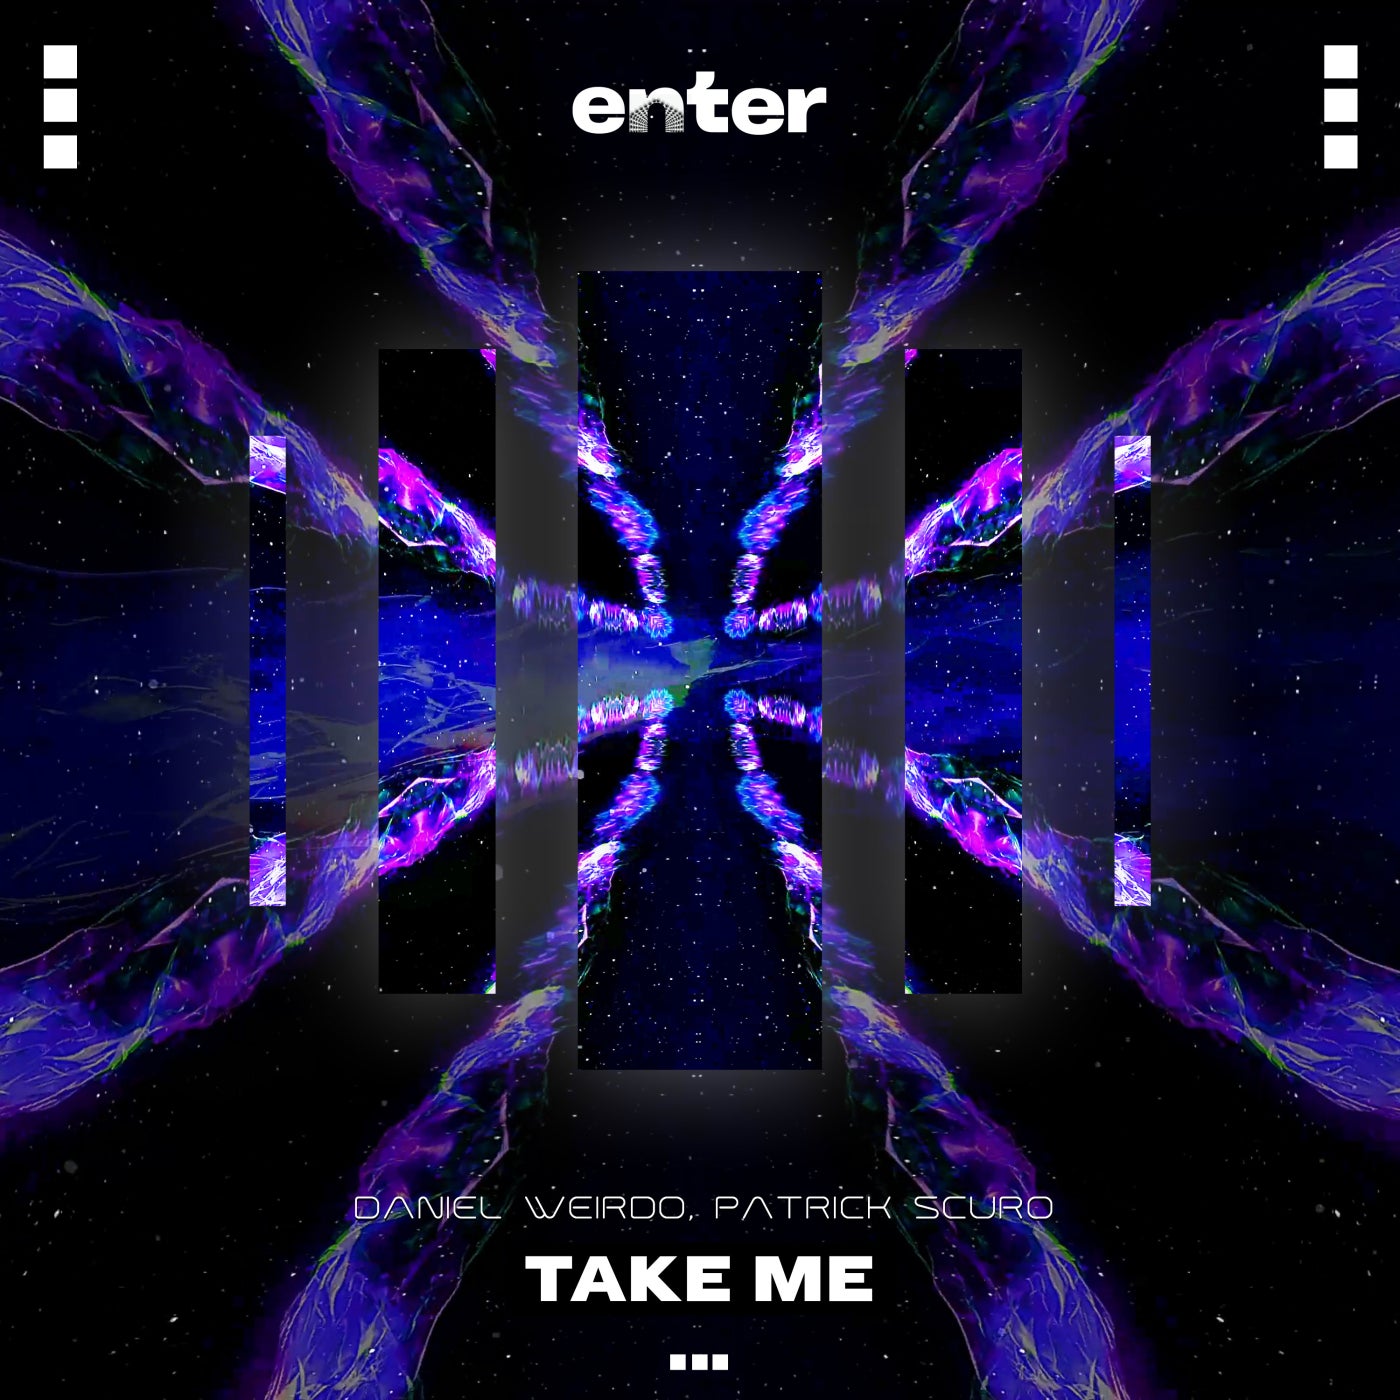 image cover: Patrick Scuro, Daniel Weirdo - Take Me on Enter Audio